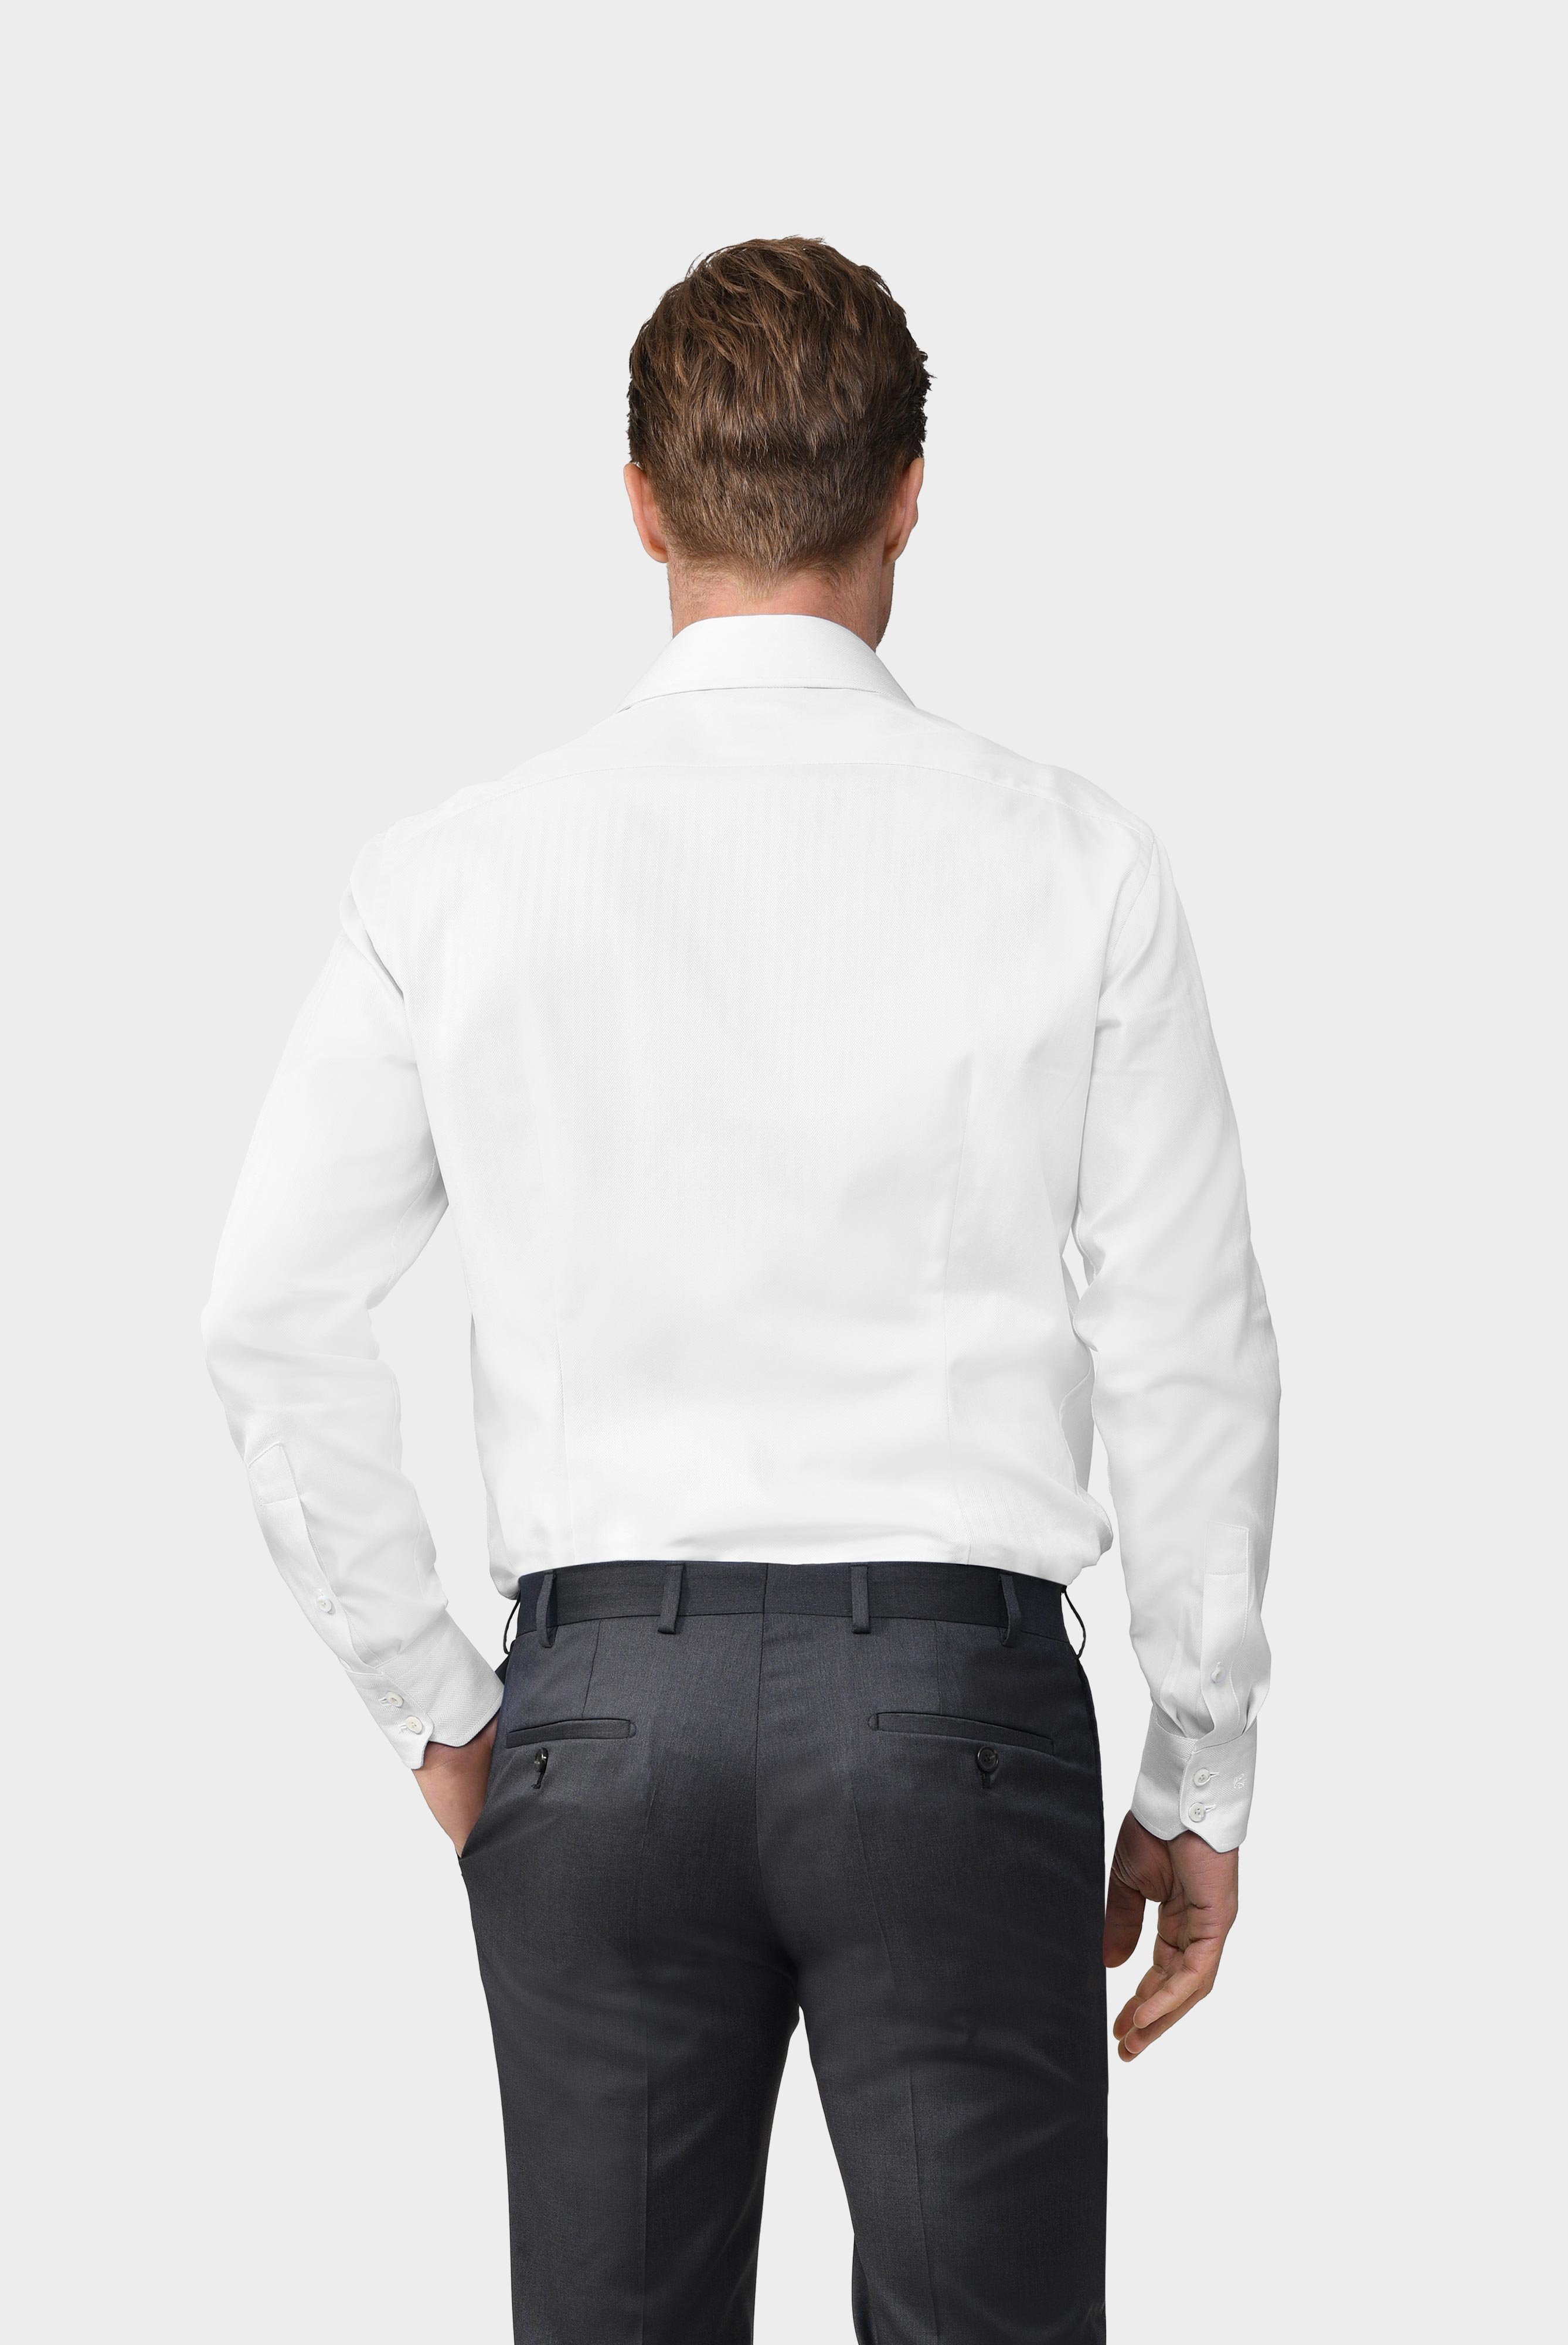 Business Hemden+Twill Hemd mit Fischgrat Tailor Fit+20.2020.AV.102501.000.39